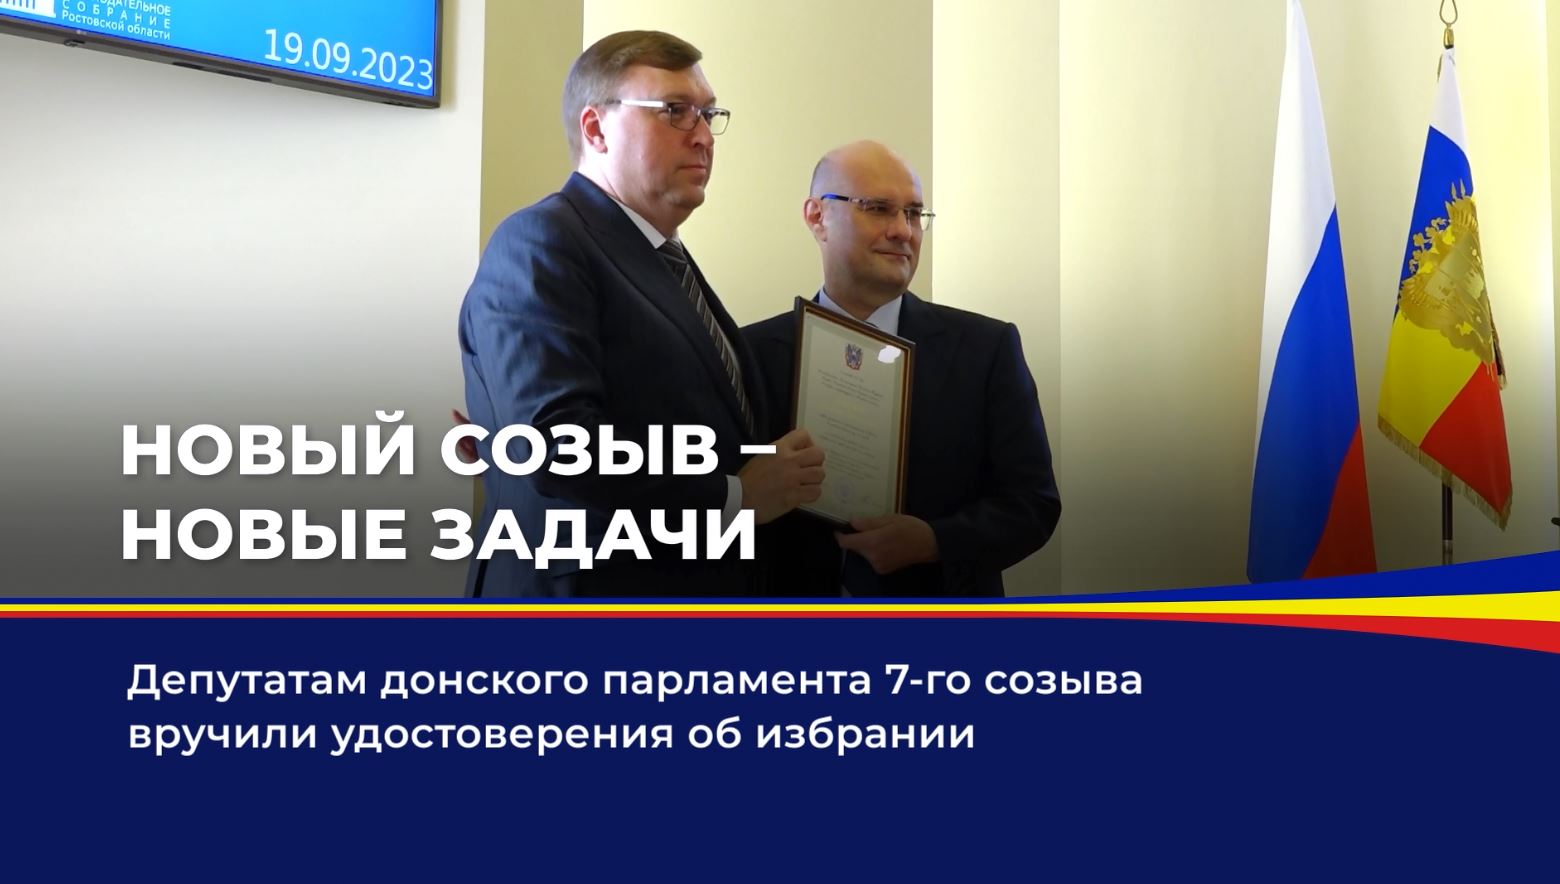 Депутатам донского парламента 7-го созыва вручили удостоверения об избрании